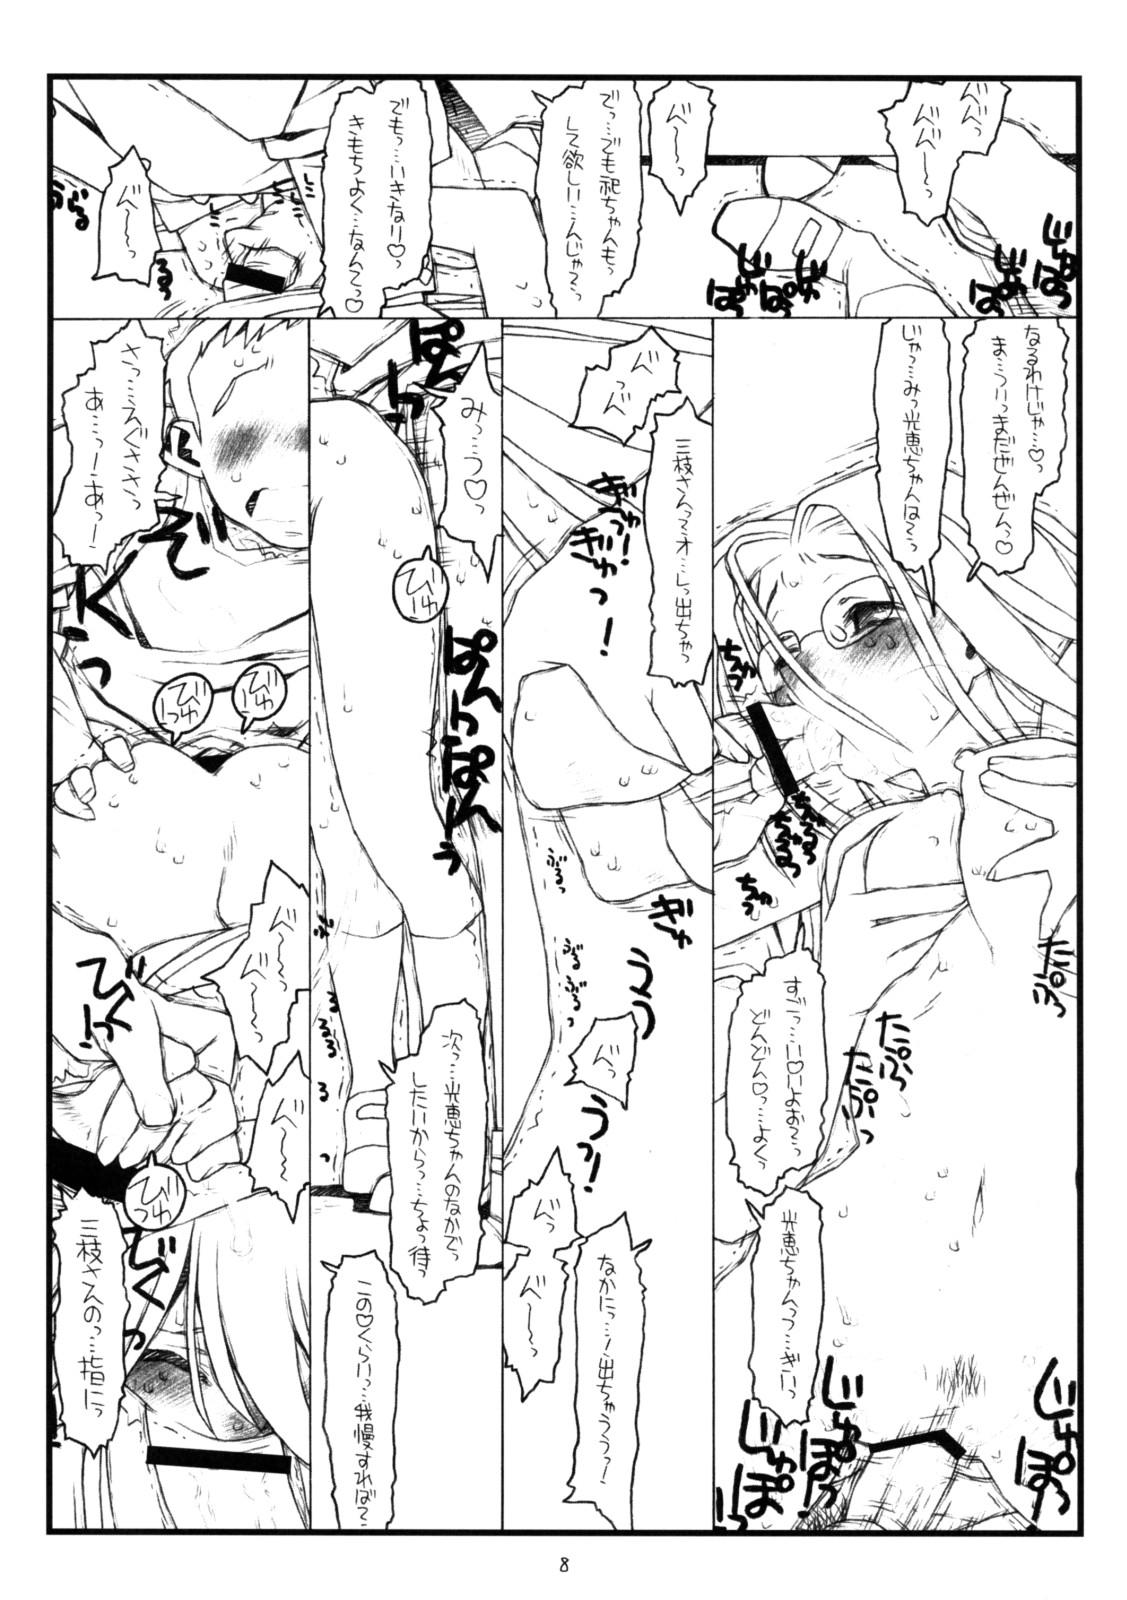 Masterbate Kamisama no Inai Tsuki - Kamichu Redbone - Page 7